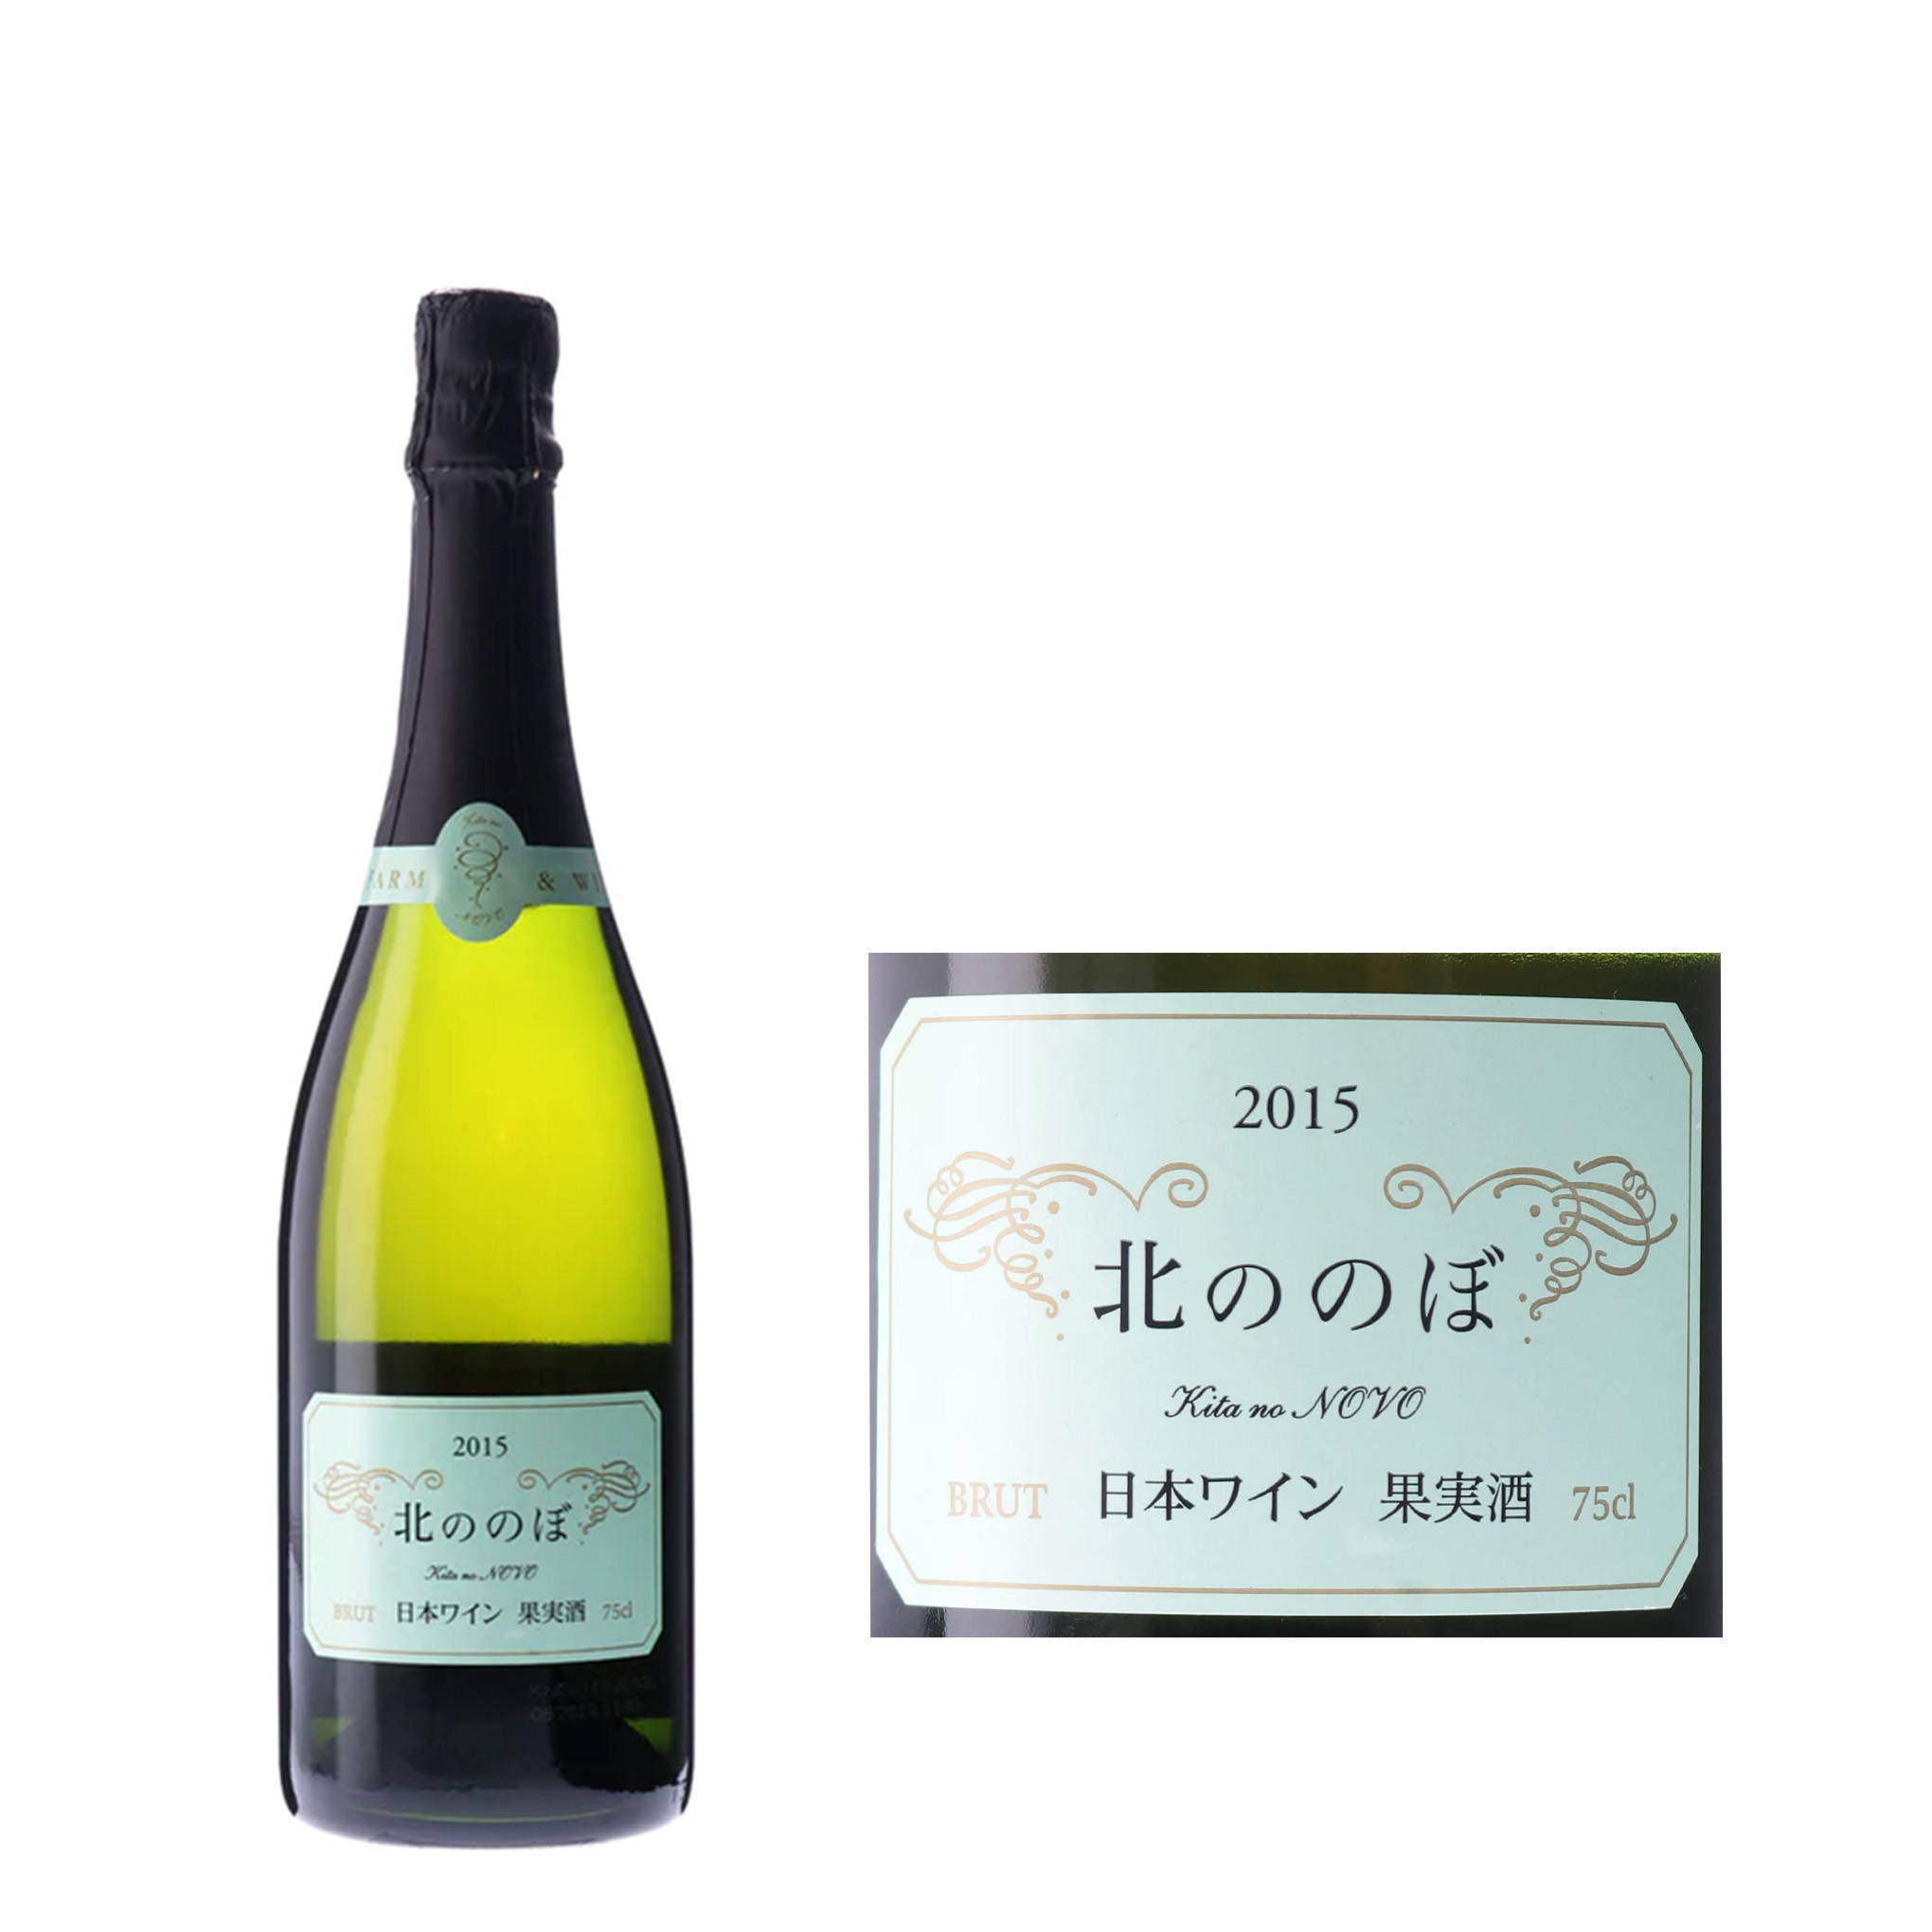 52カ月以上瓶内熟成を経た逸品！現代の日本ワインの父ブルース･ガットラヴ氏による、スパークリングワイン。